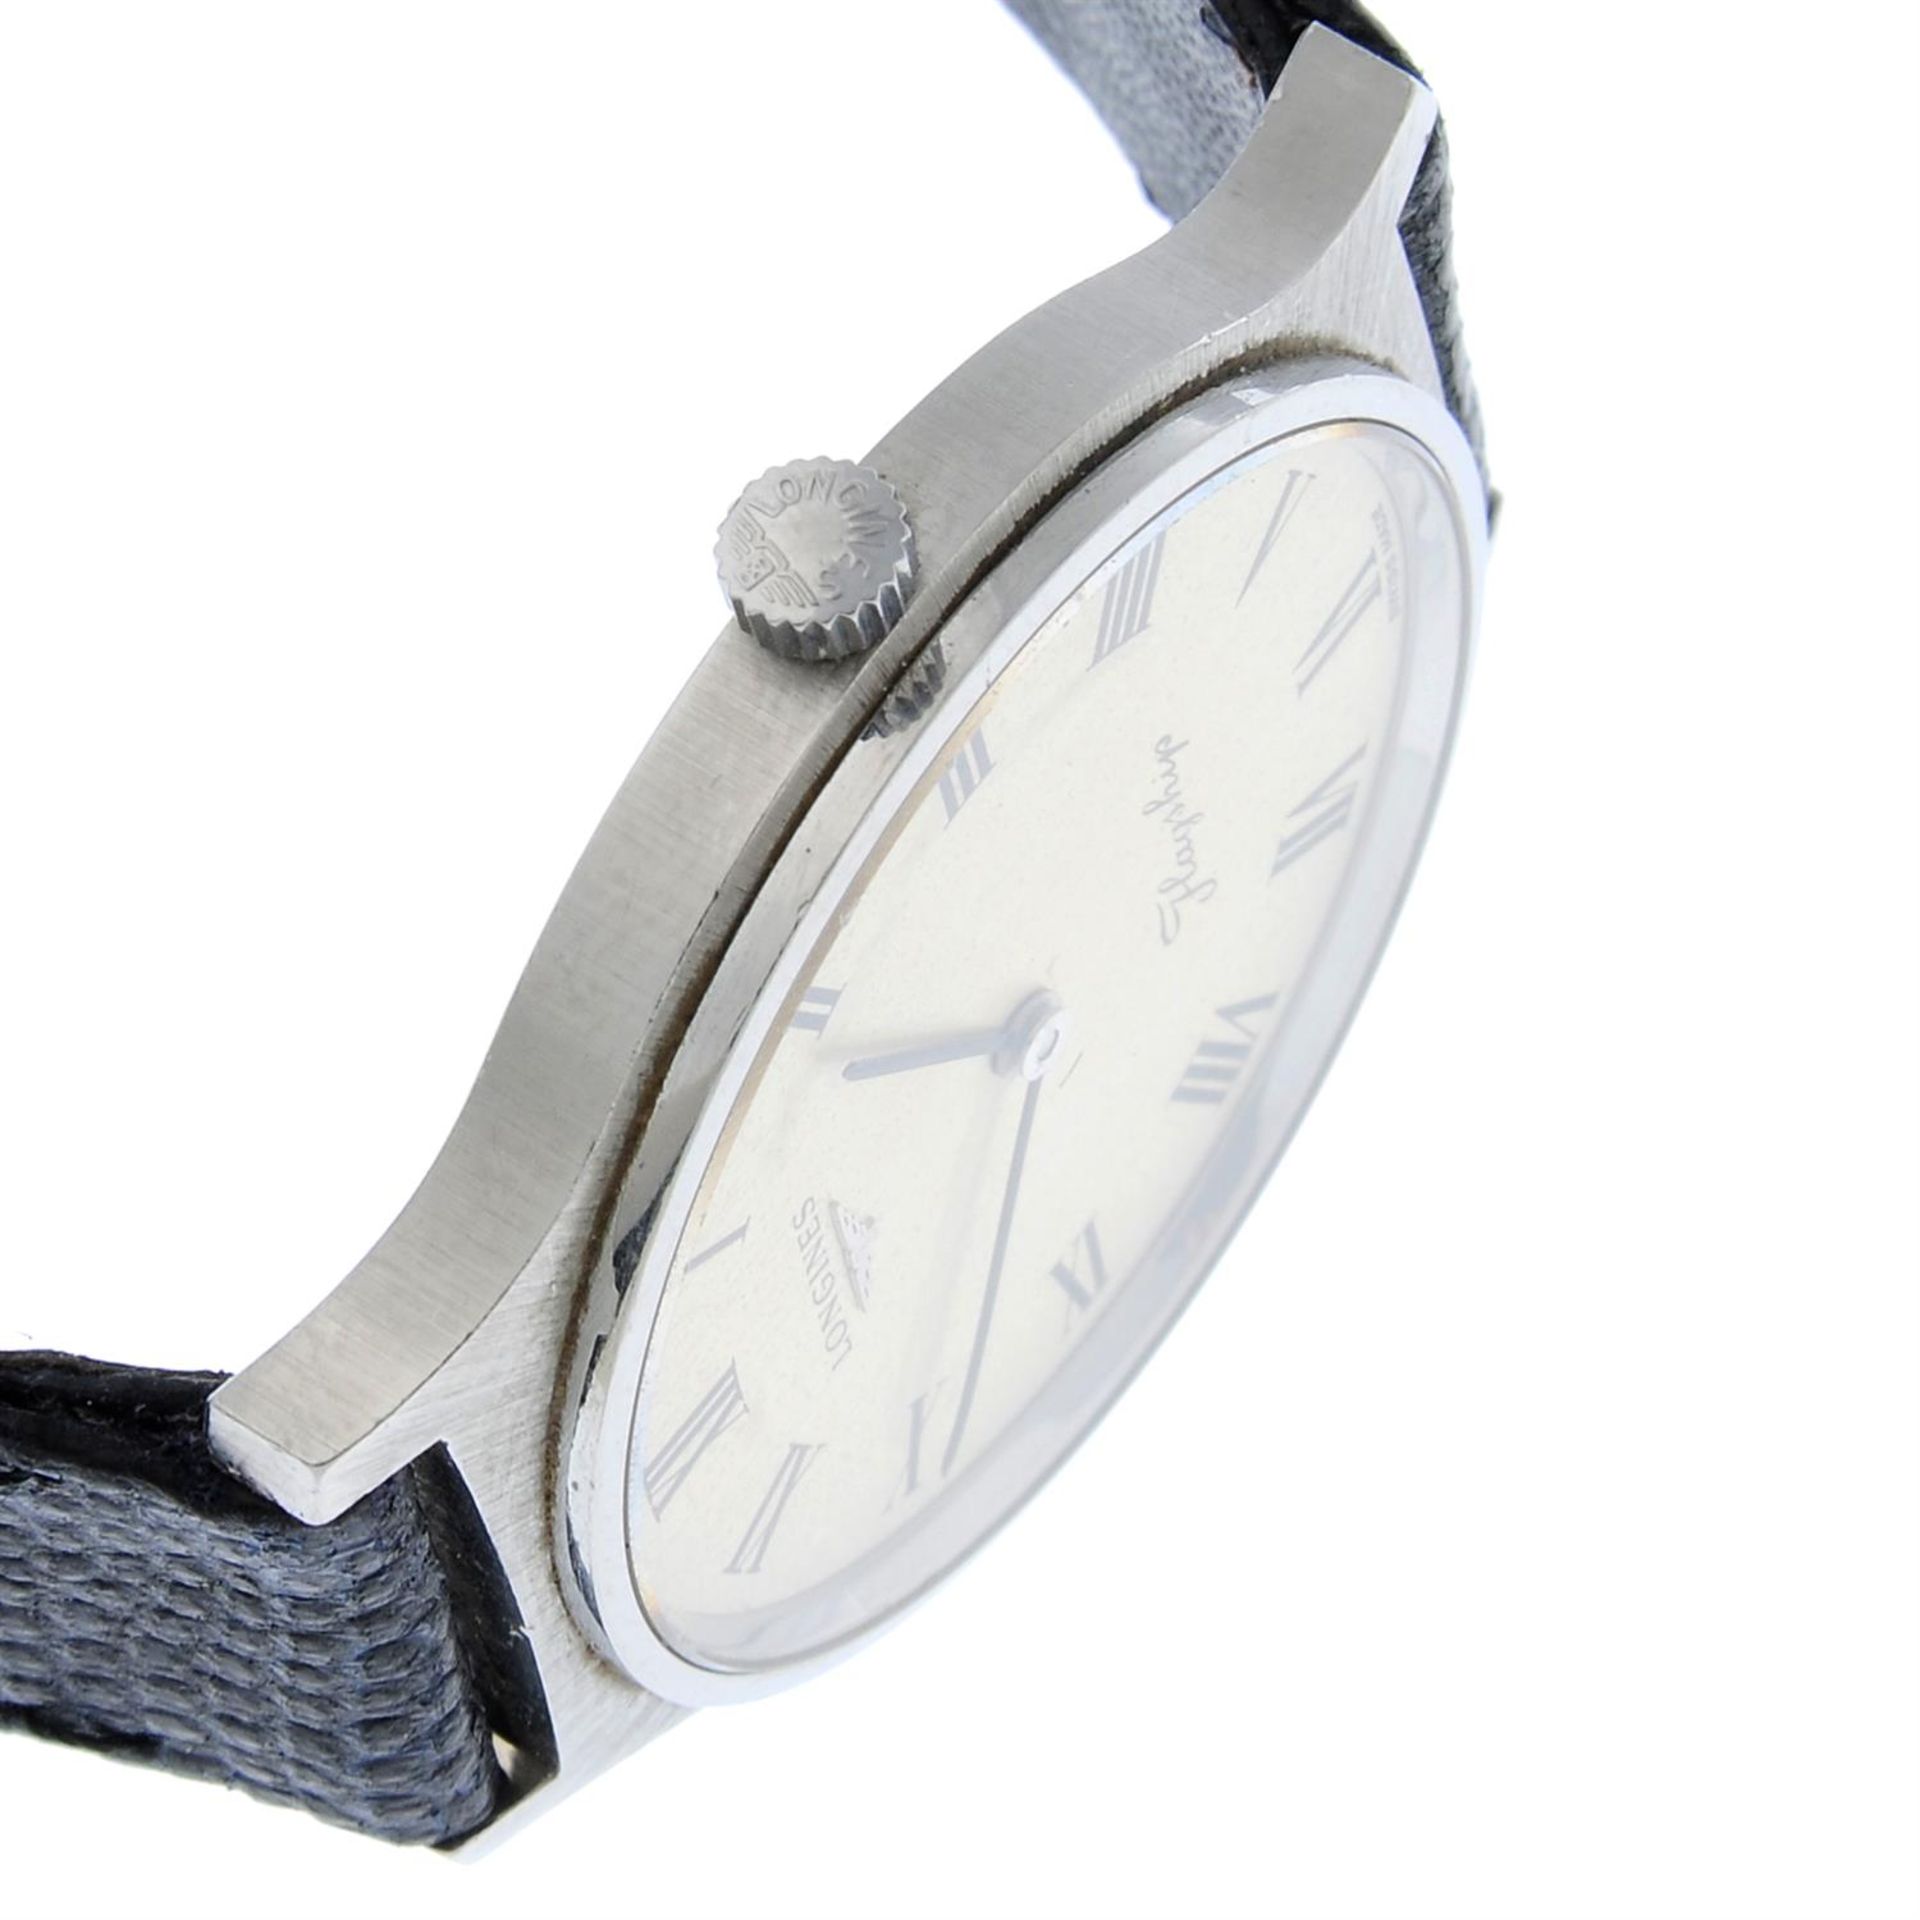 LONGINES - a stainless steel Flagship wrist watch, 33mm. - Bild 3 aus 4